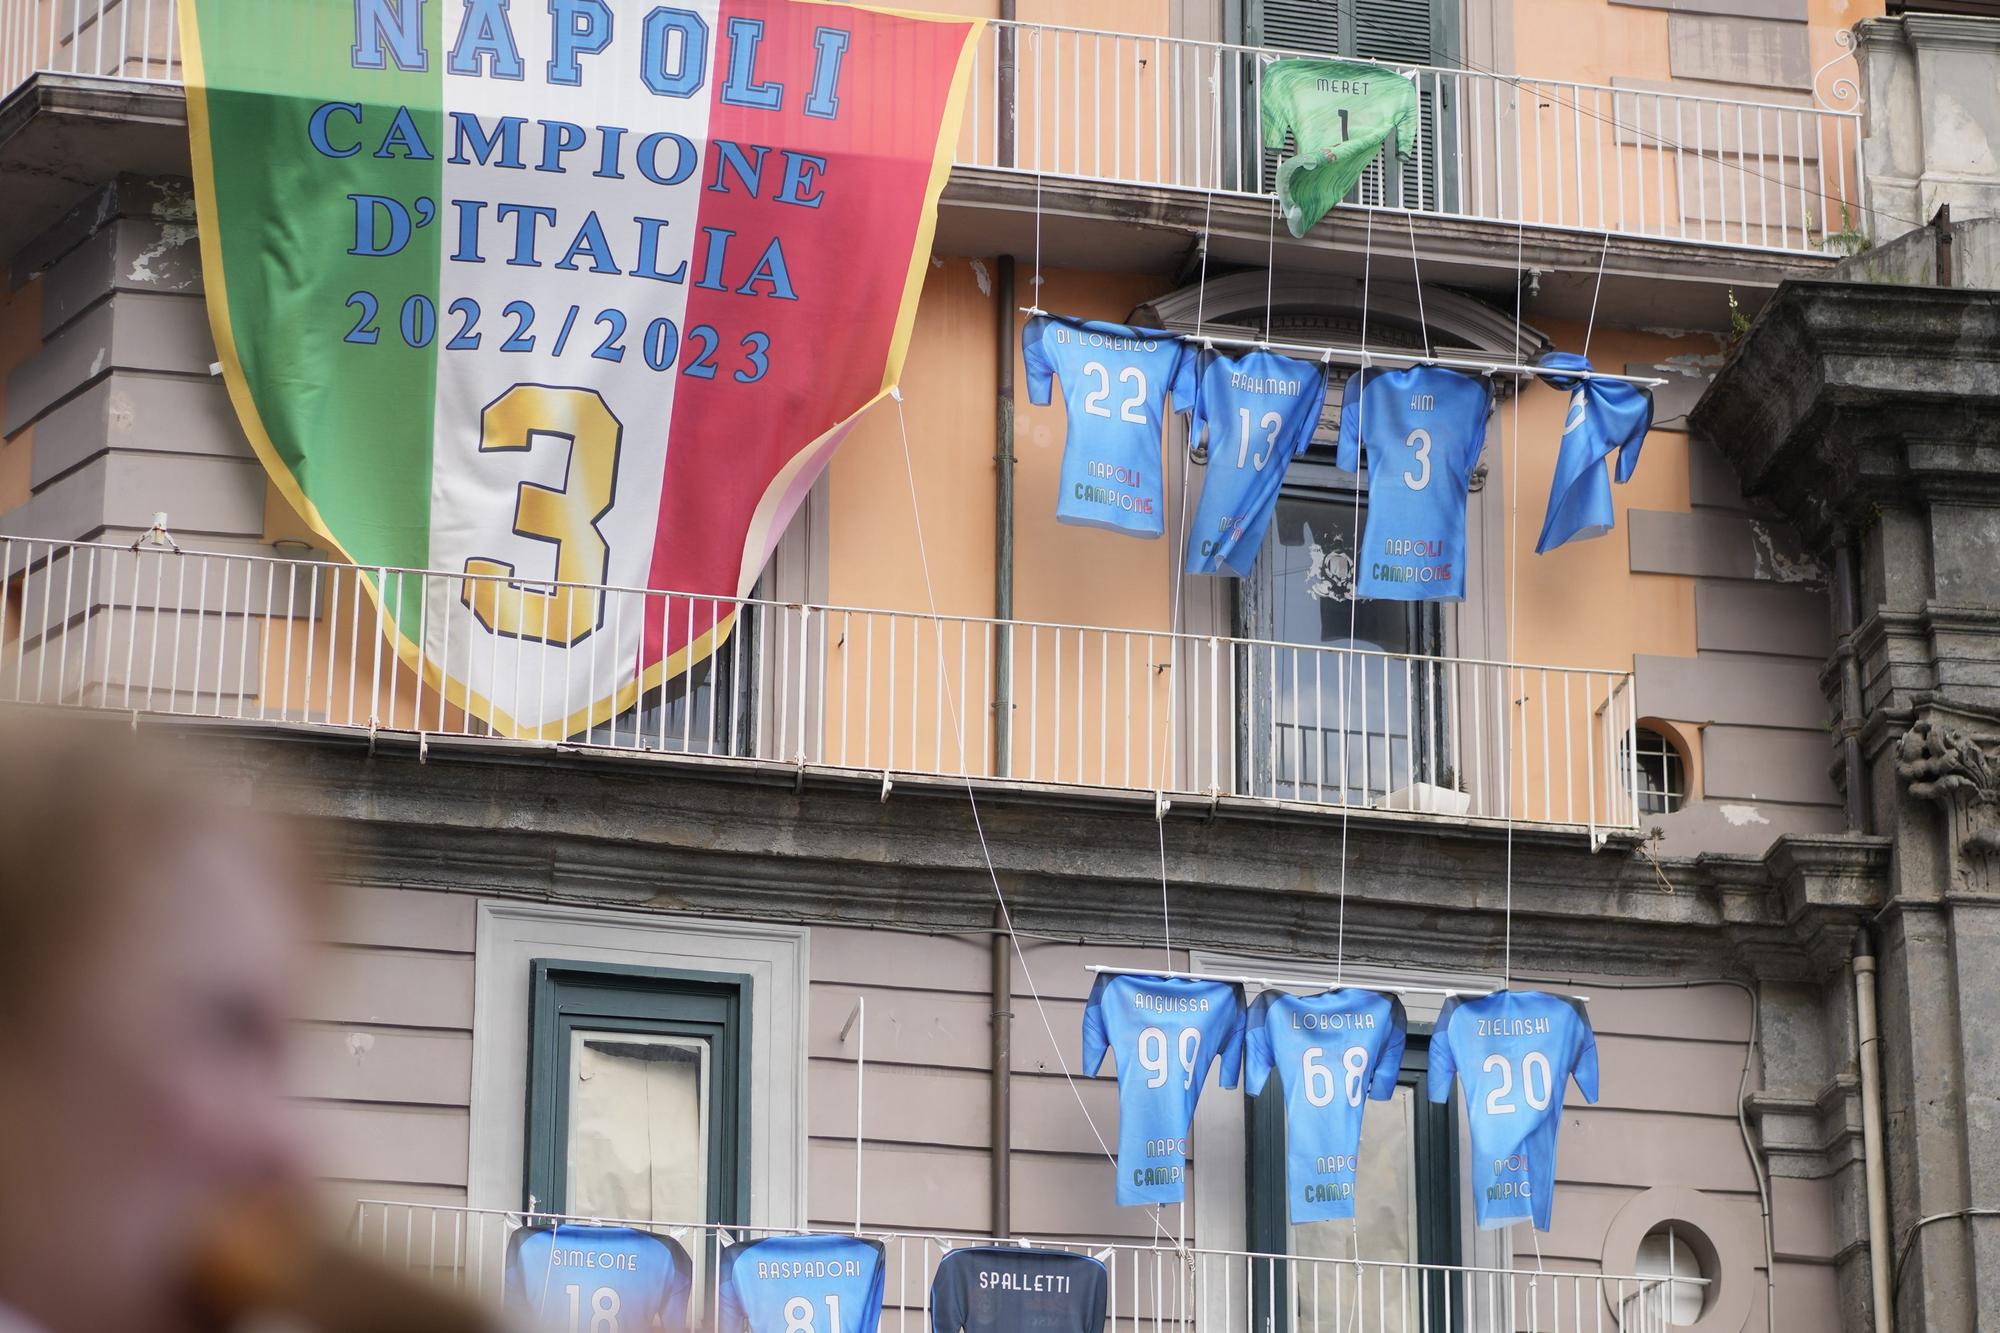 Pohľad na budovu zdobenú dresmi neapolských futbalových tímov.